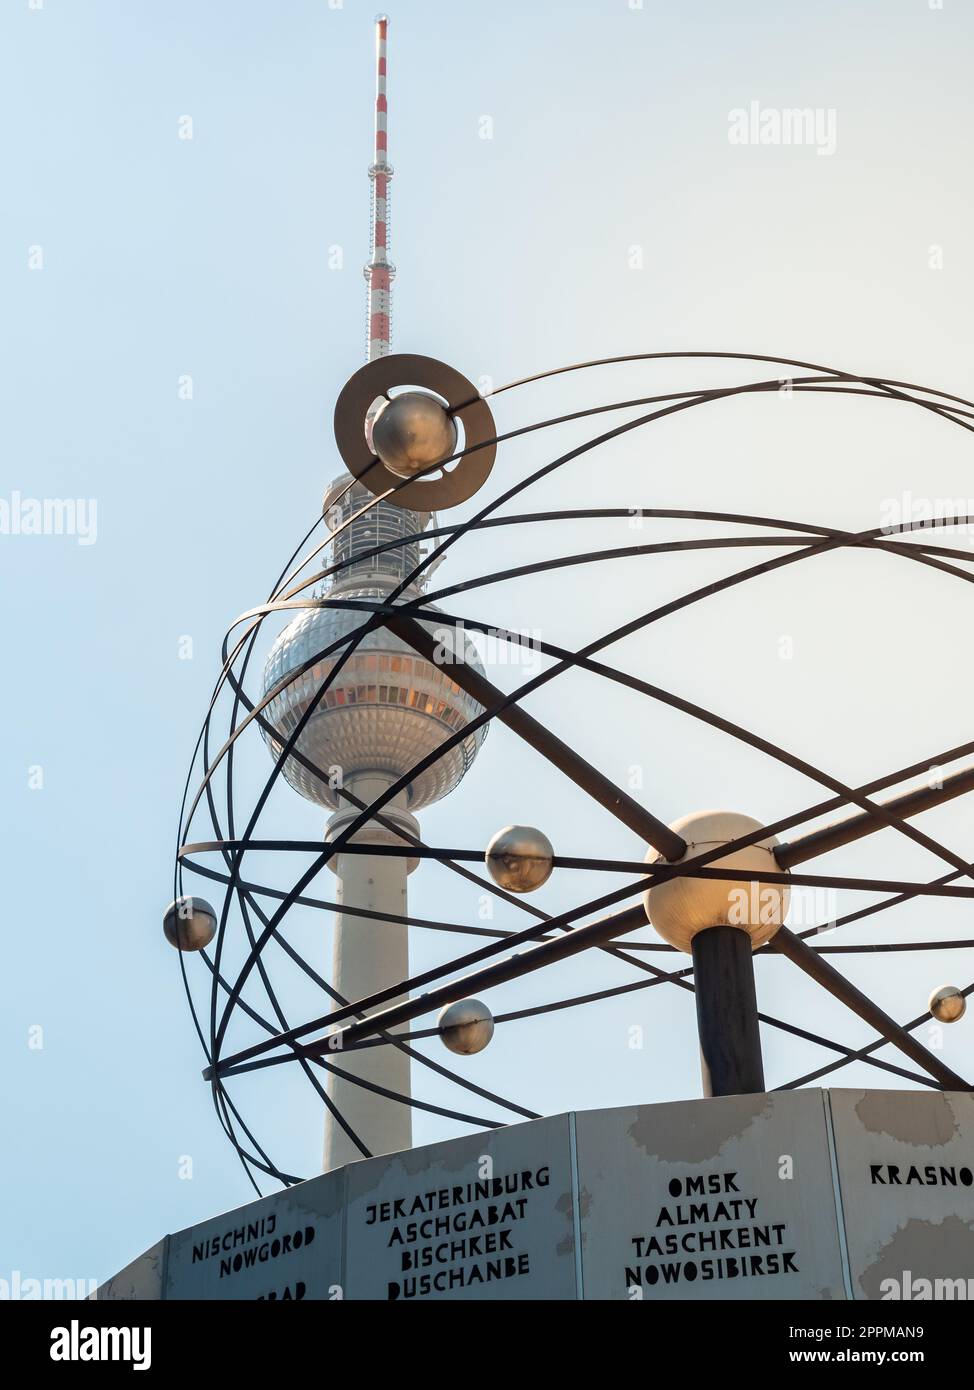 Célèbre tour de télévision de Berlin, tour d'observation avec horloge mondiale et sculpture de plantes en face, vue de bas angle pendant le coucher du soleil, ciel clair Banque D'Images